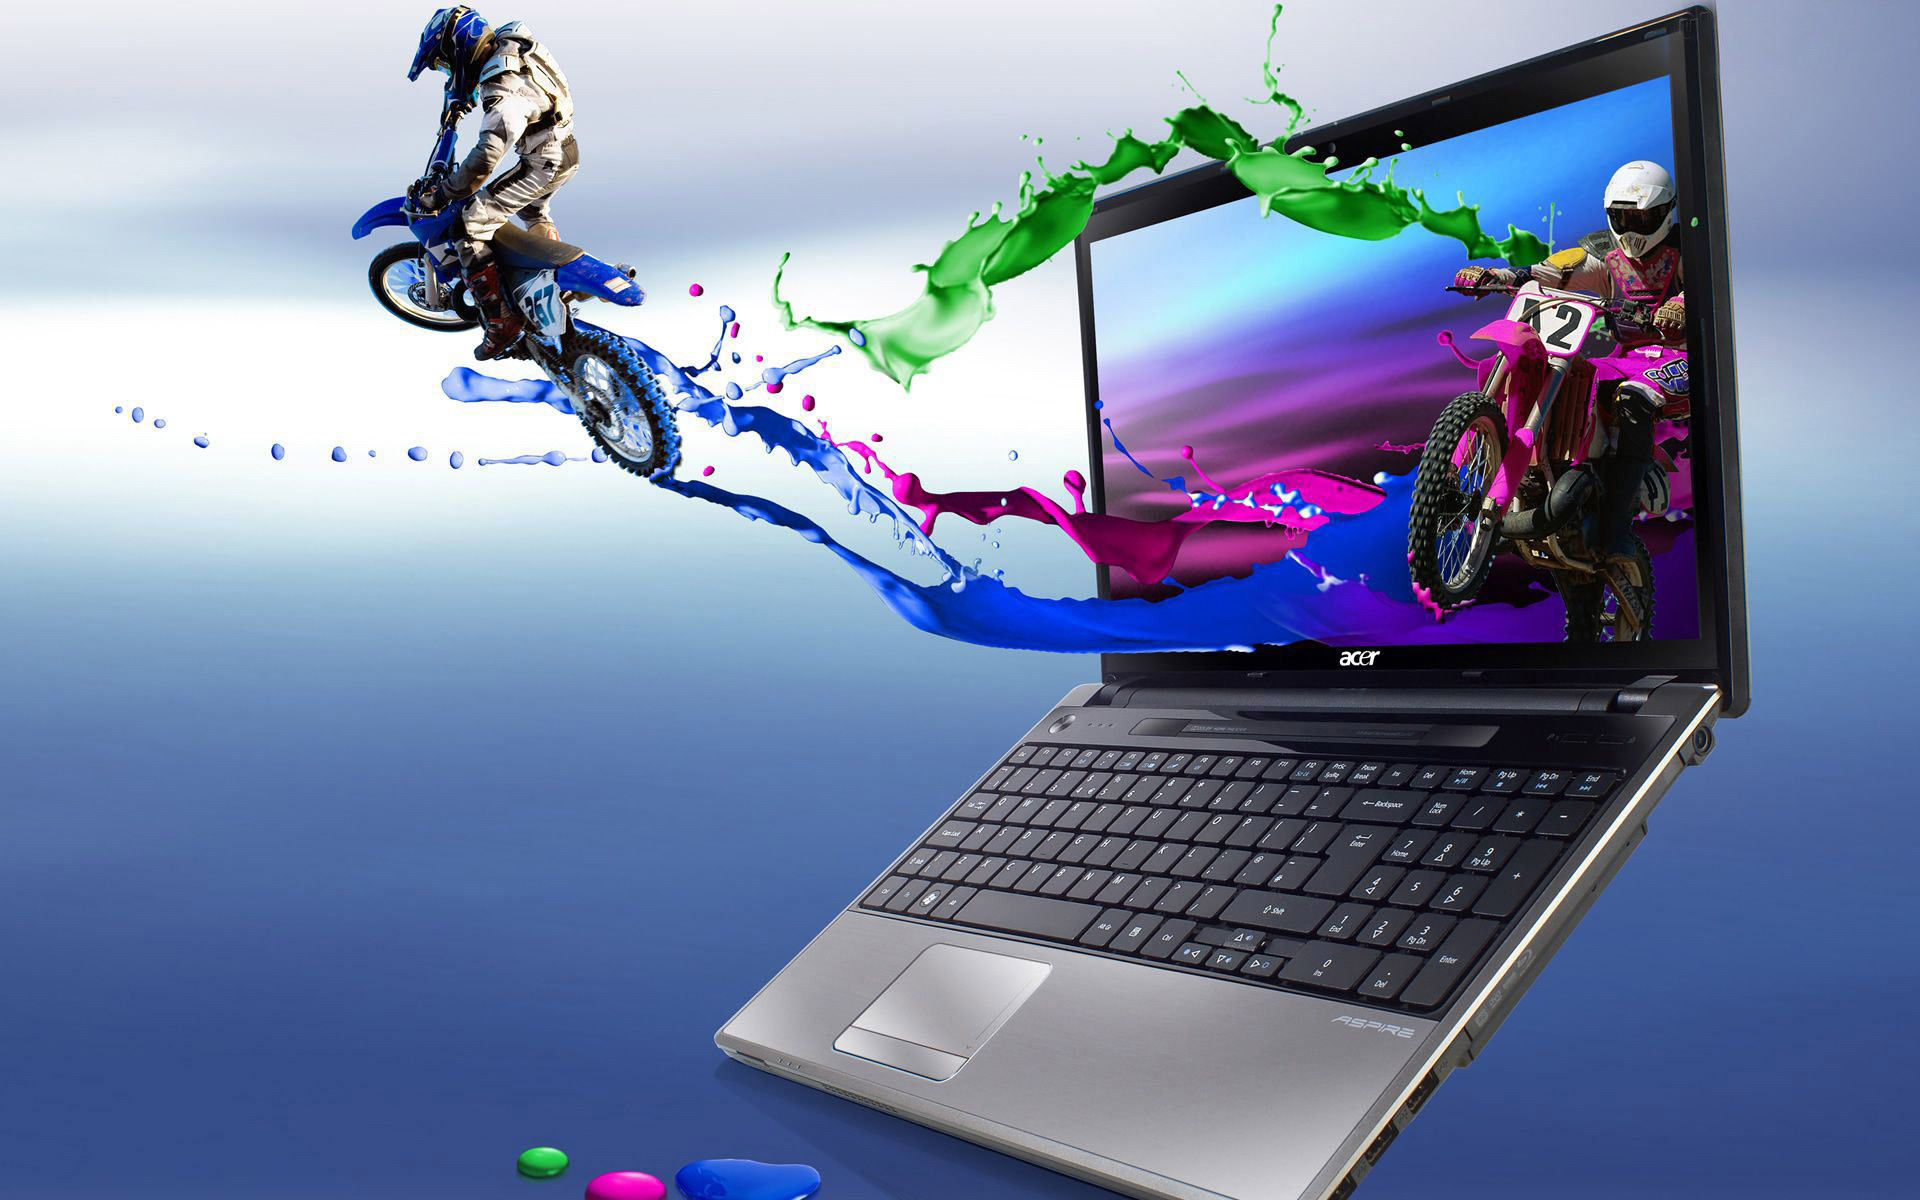 40 Gambar Download Wallpaper Hd Laptop Asus terbaru 2020